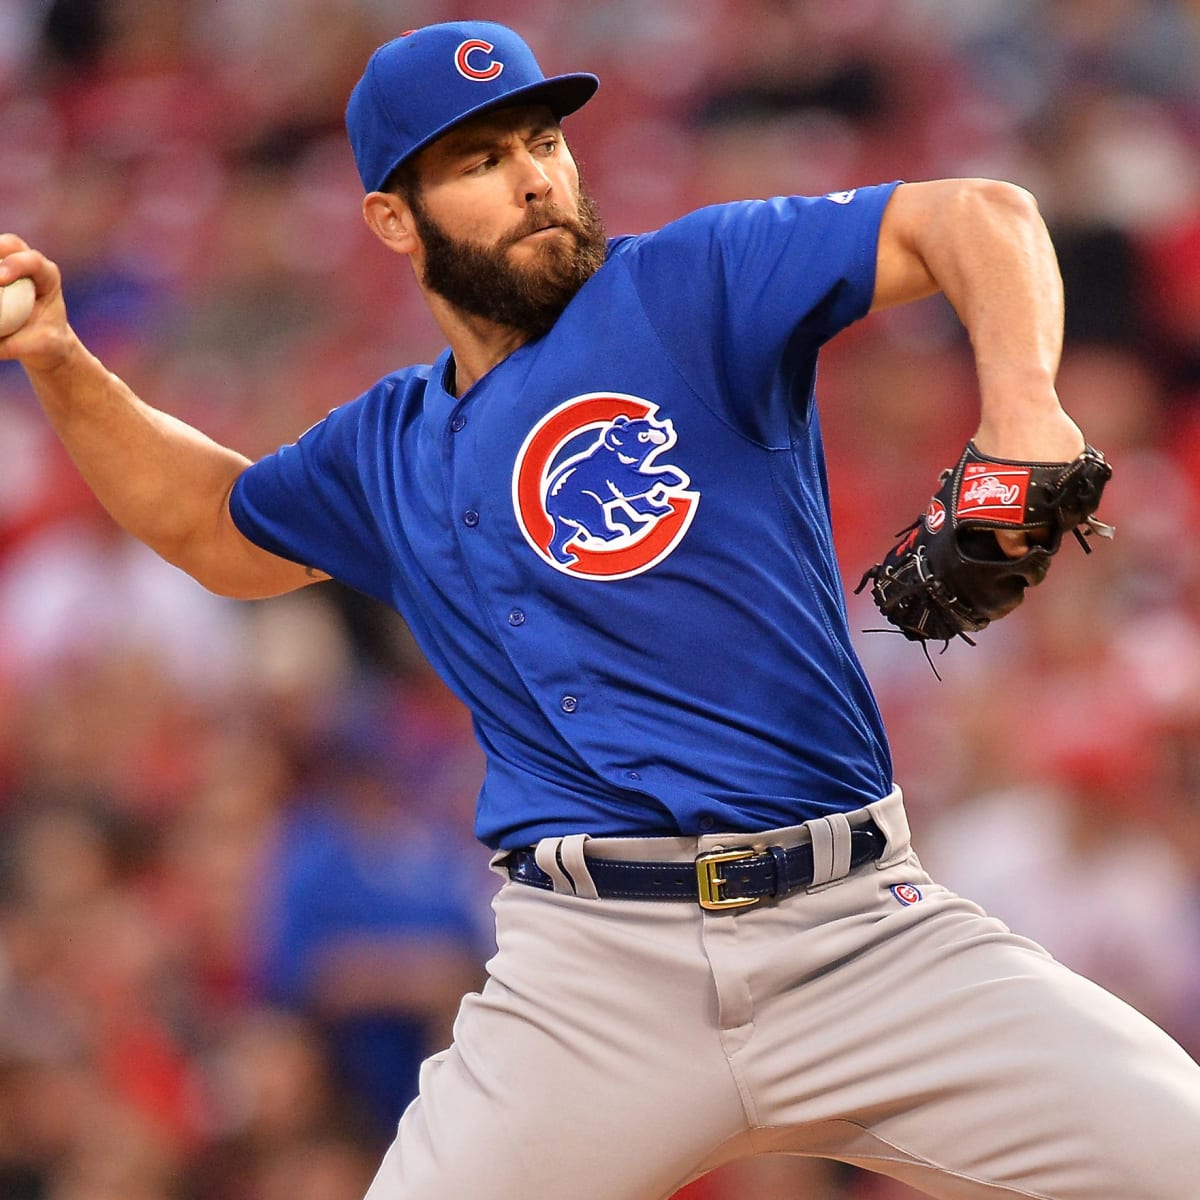 September 22, 2015: Cubs' Jake Arrieta tosses 3-hit shutout for